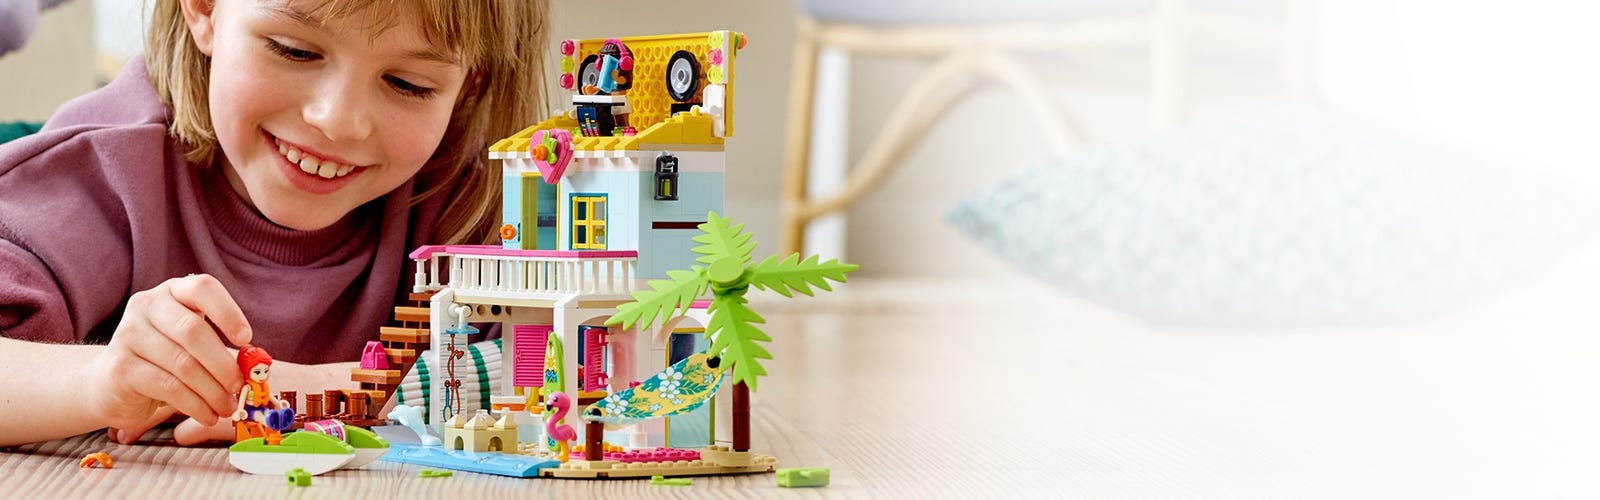 La maison sur la plage 41428 | Friends | Boutique LEGO® officielle CA